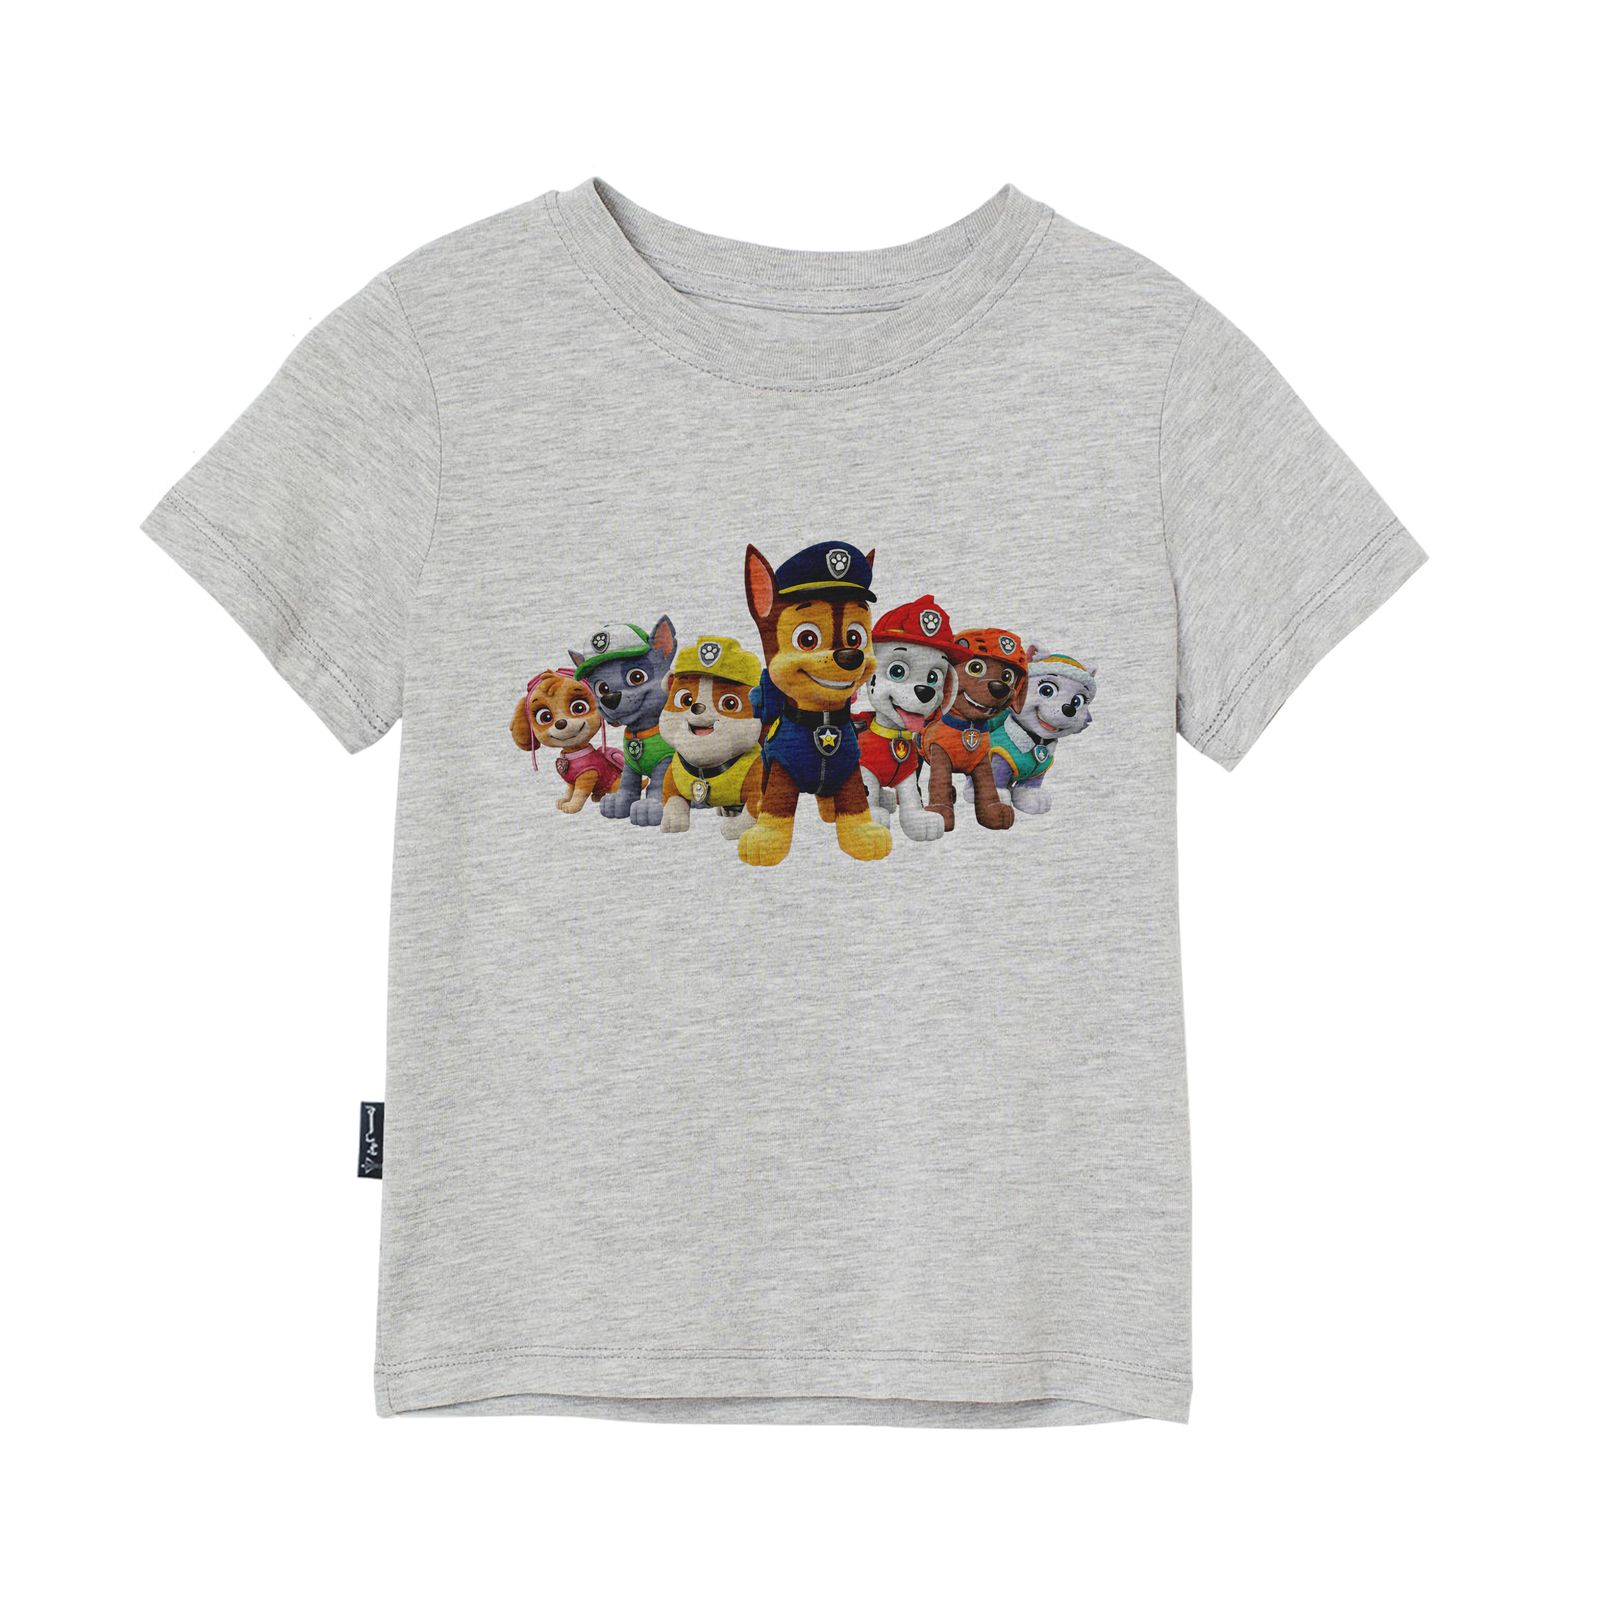 تی شرت آستین کوتاه دخترانه به رسم مدل گشت پنجولی کد 110023 -  - 1